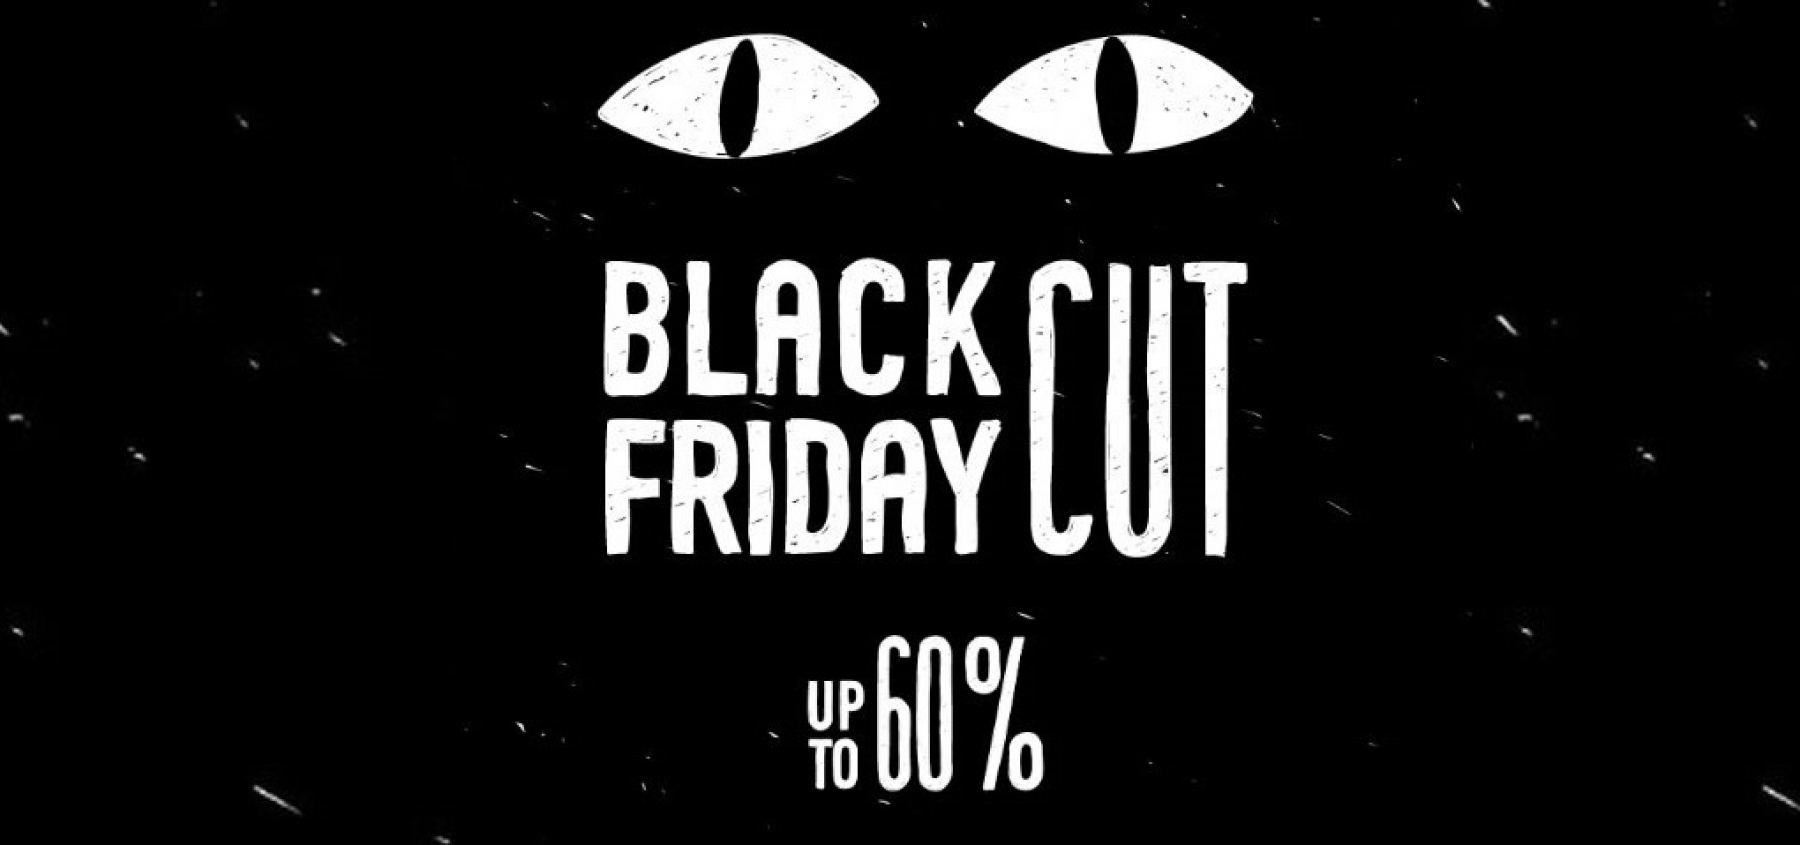 Λαμία: Black Friday Cut με προσφορές έως -60% στην CANDIA